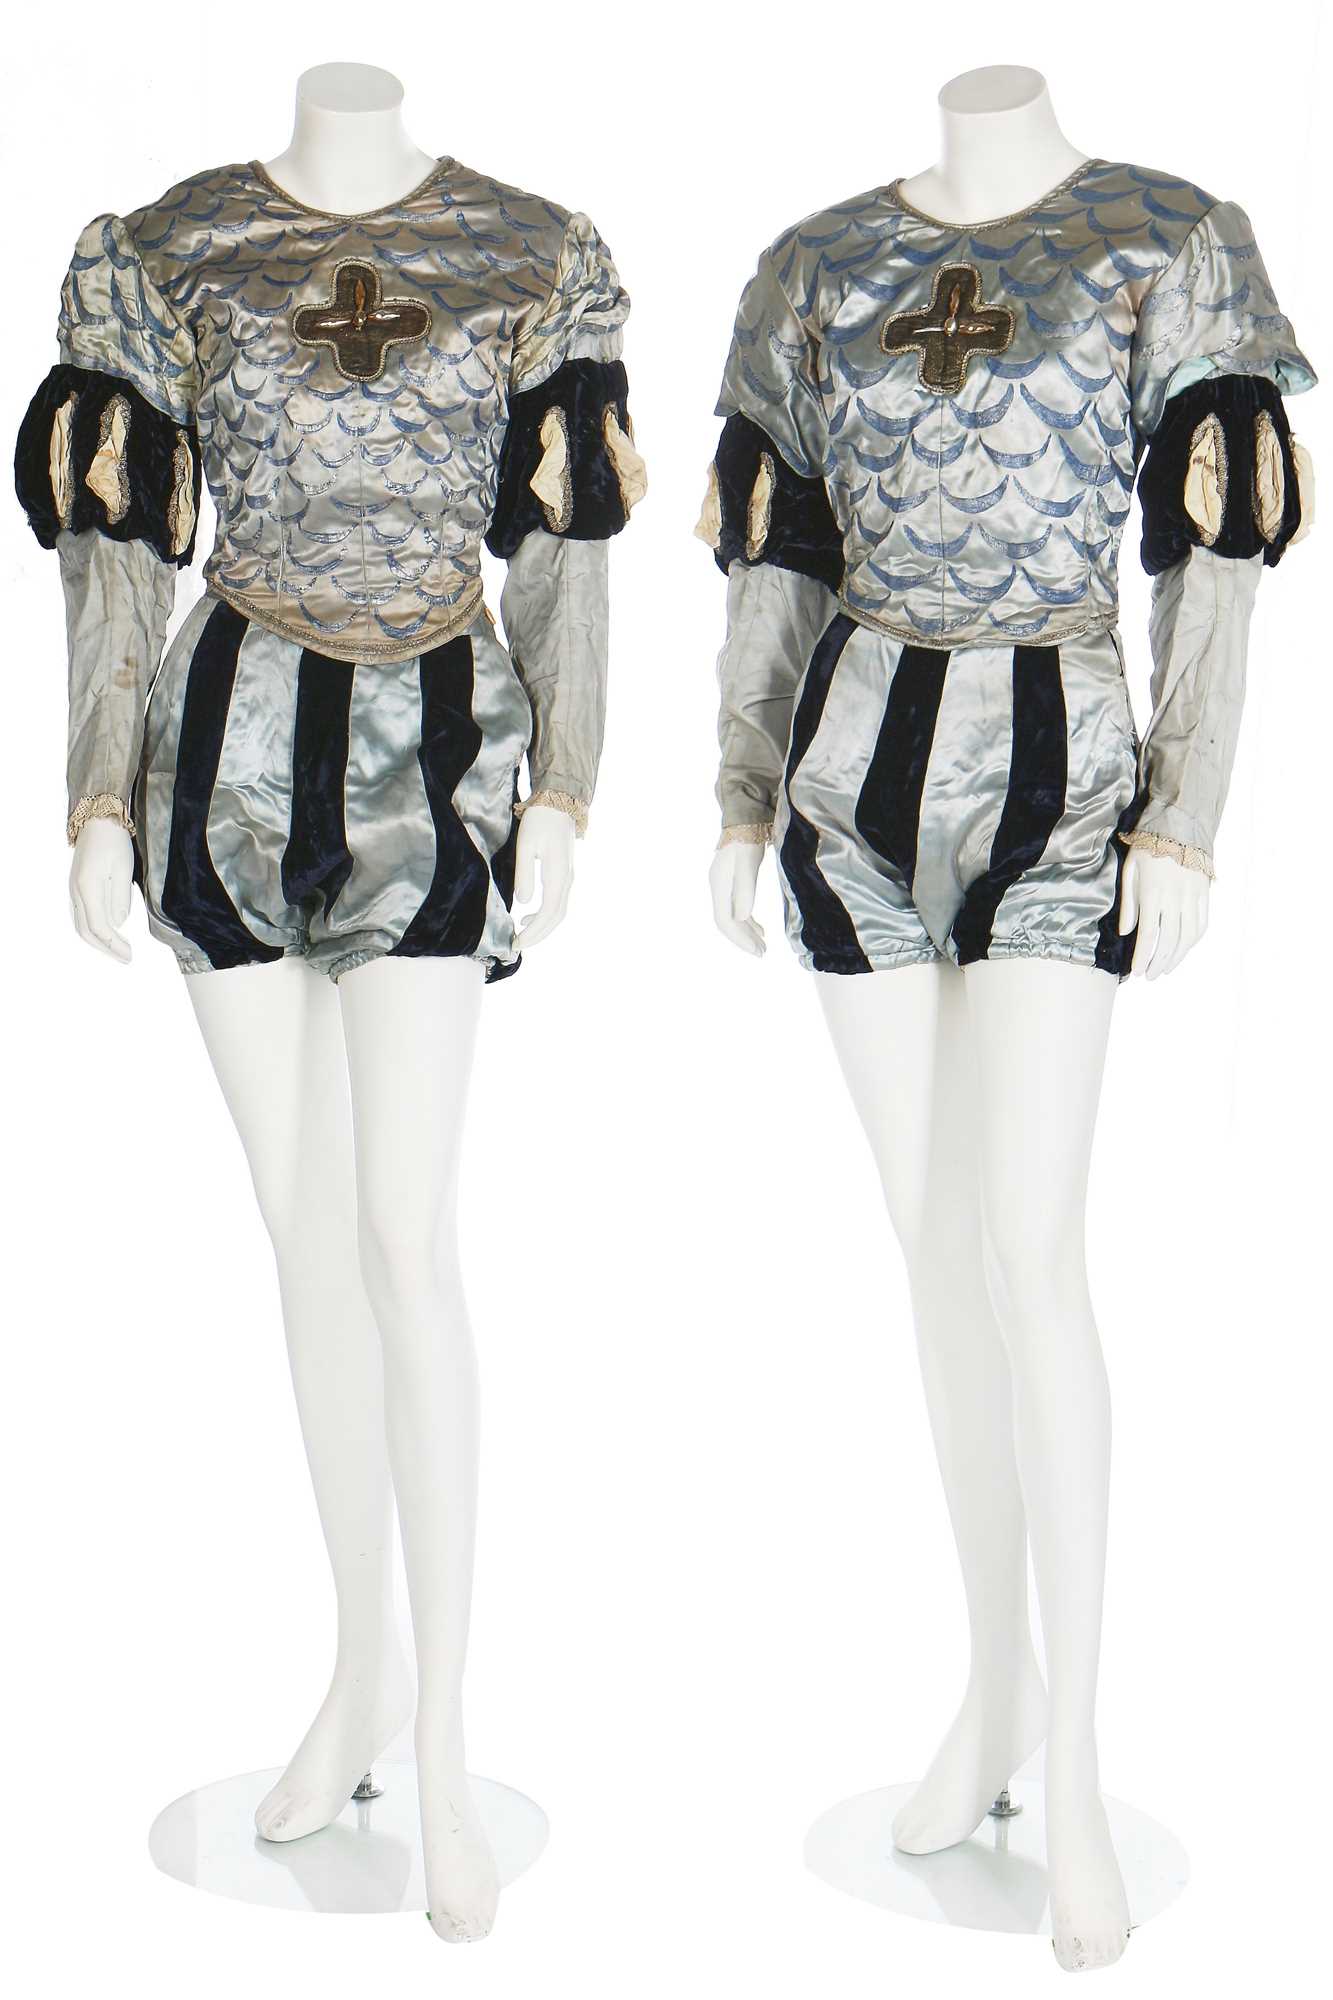 Lot 53 - Two de Basil Ballets Russes Cavalier costumes from 'Le Pavillon d'Armide', after a design by Benois, 1950s